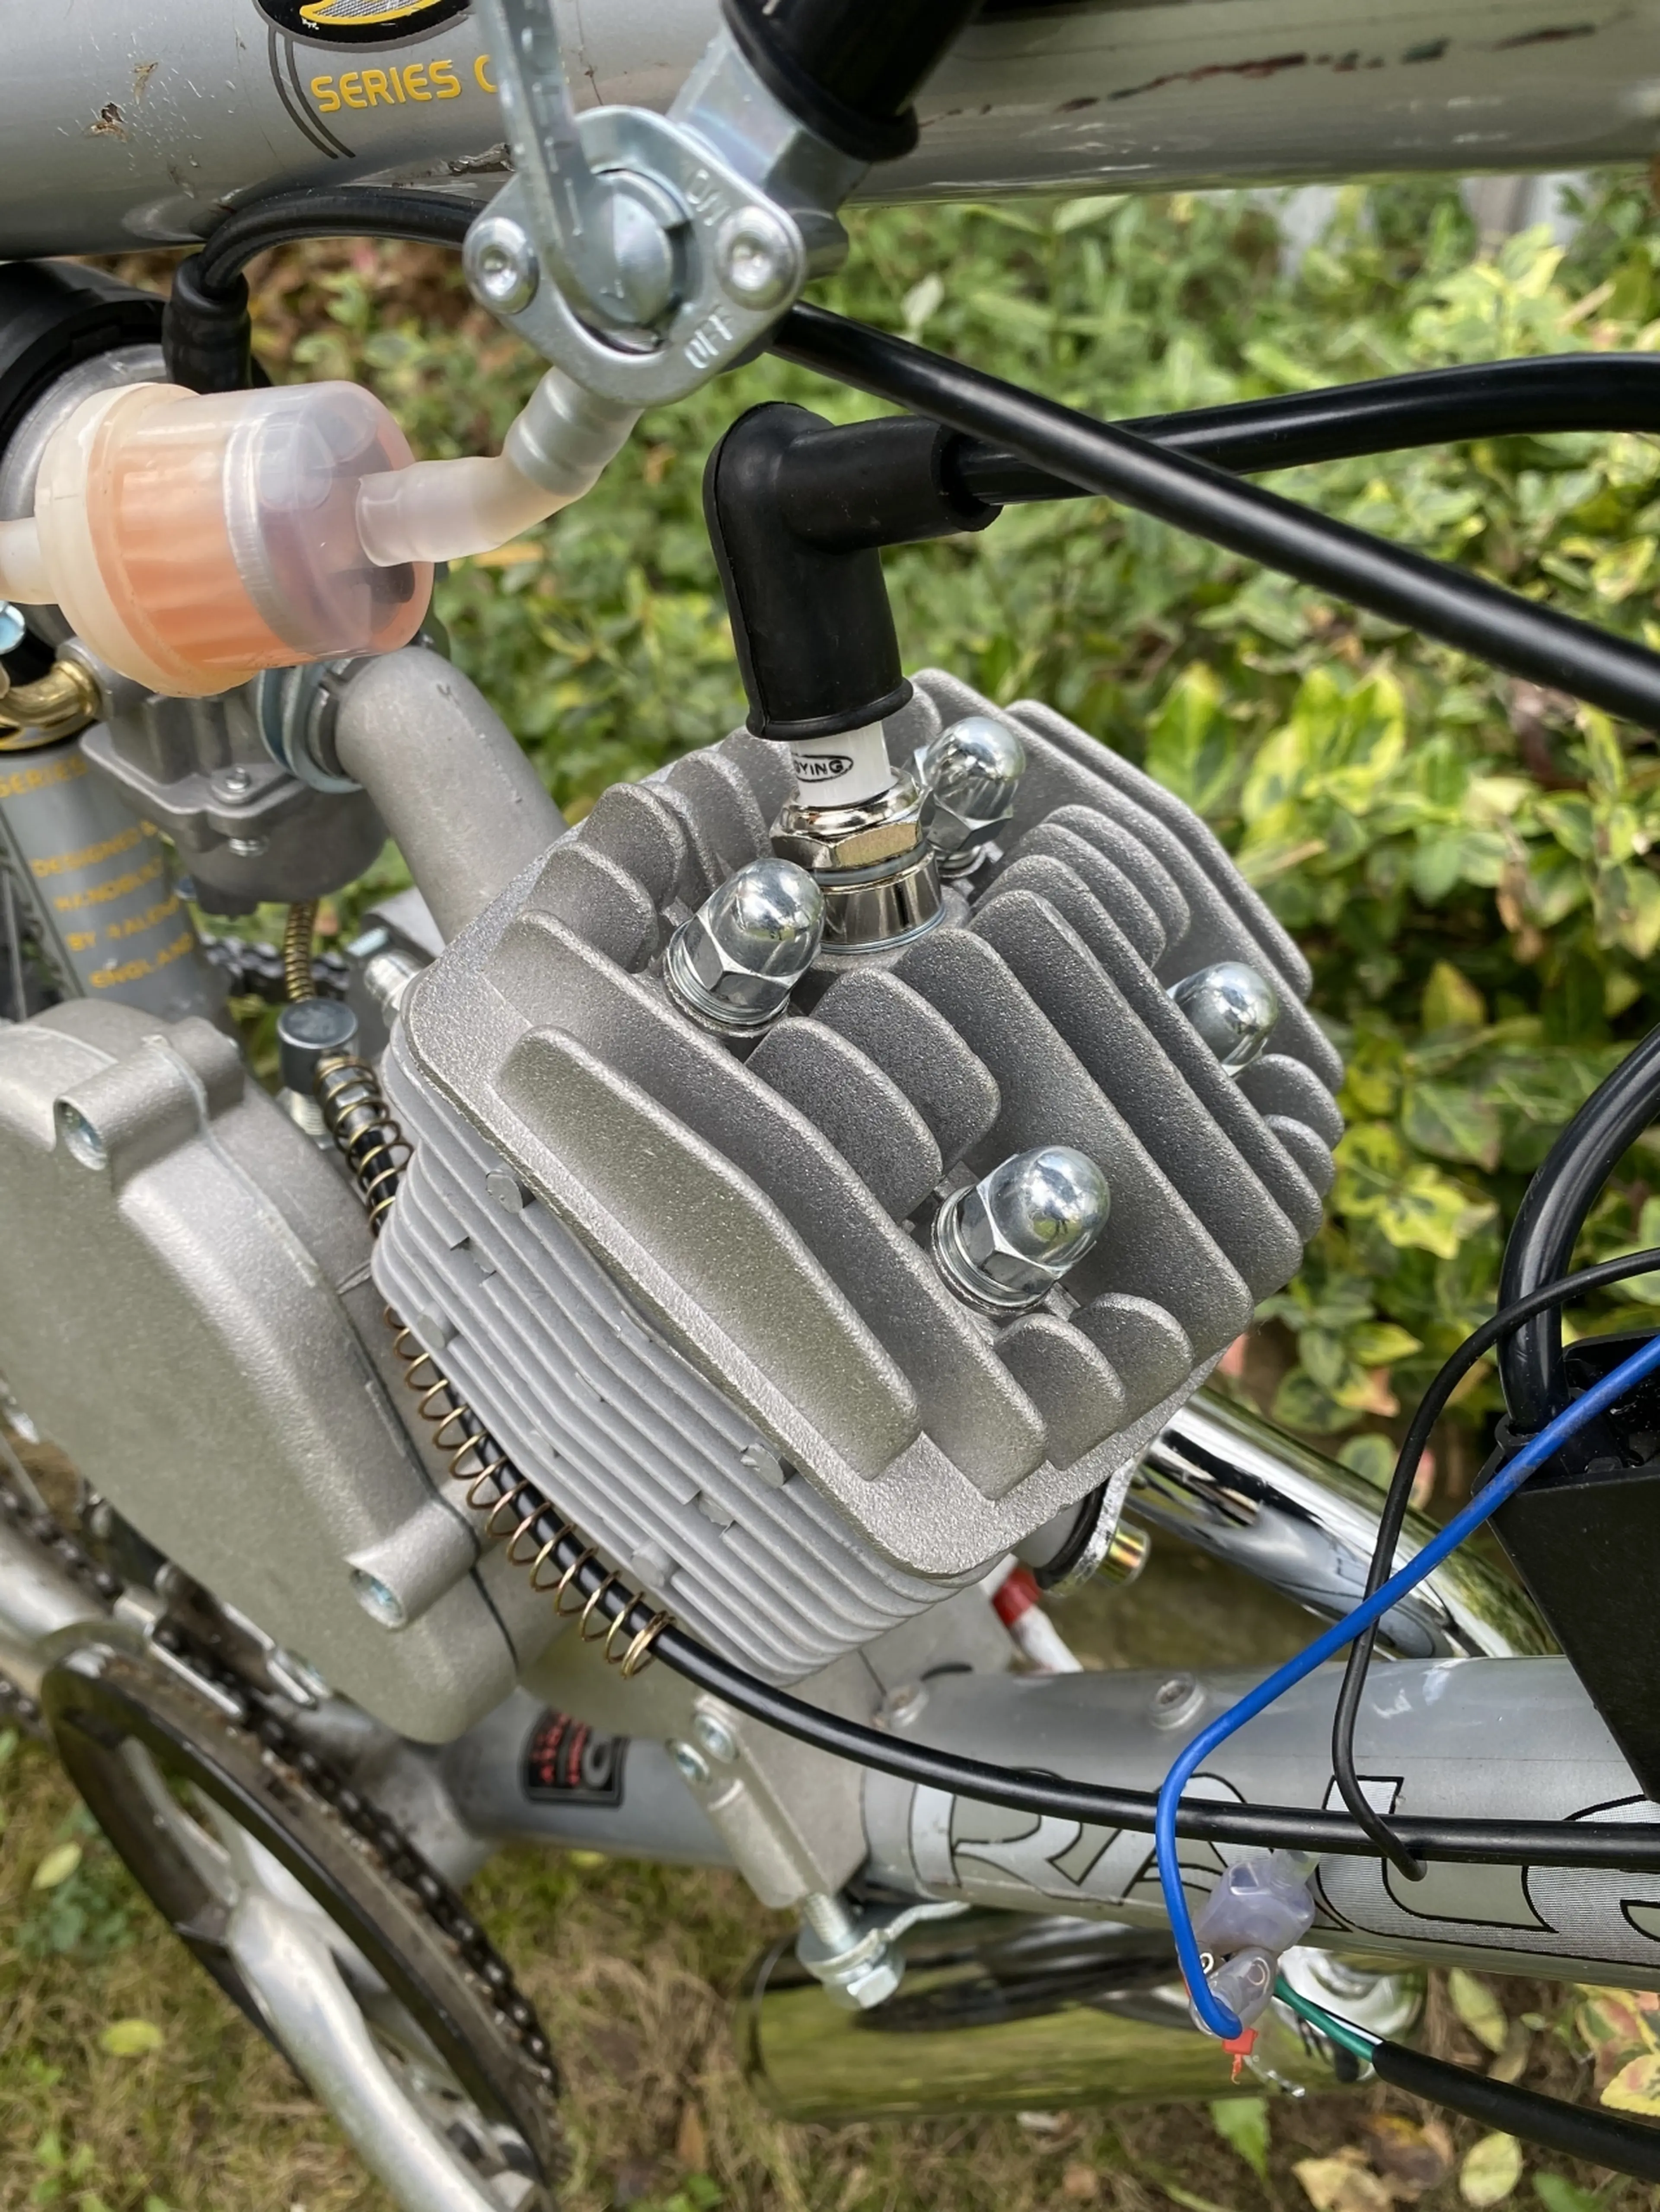 6. Bicicleta cu motor 80cc, NOU, roti 26’, cadru Aluminiu, doar testata pentru regl